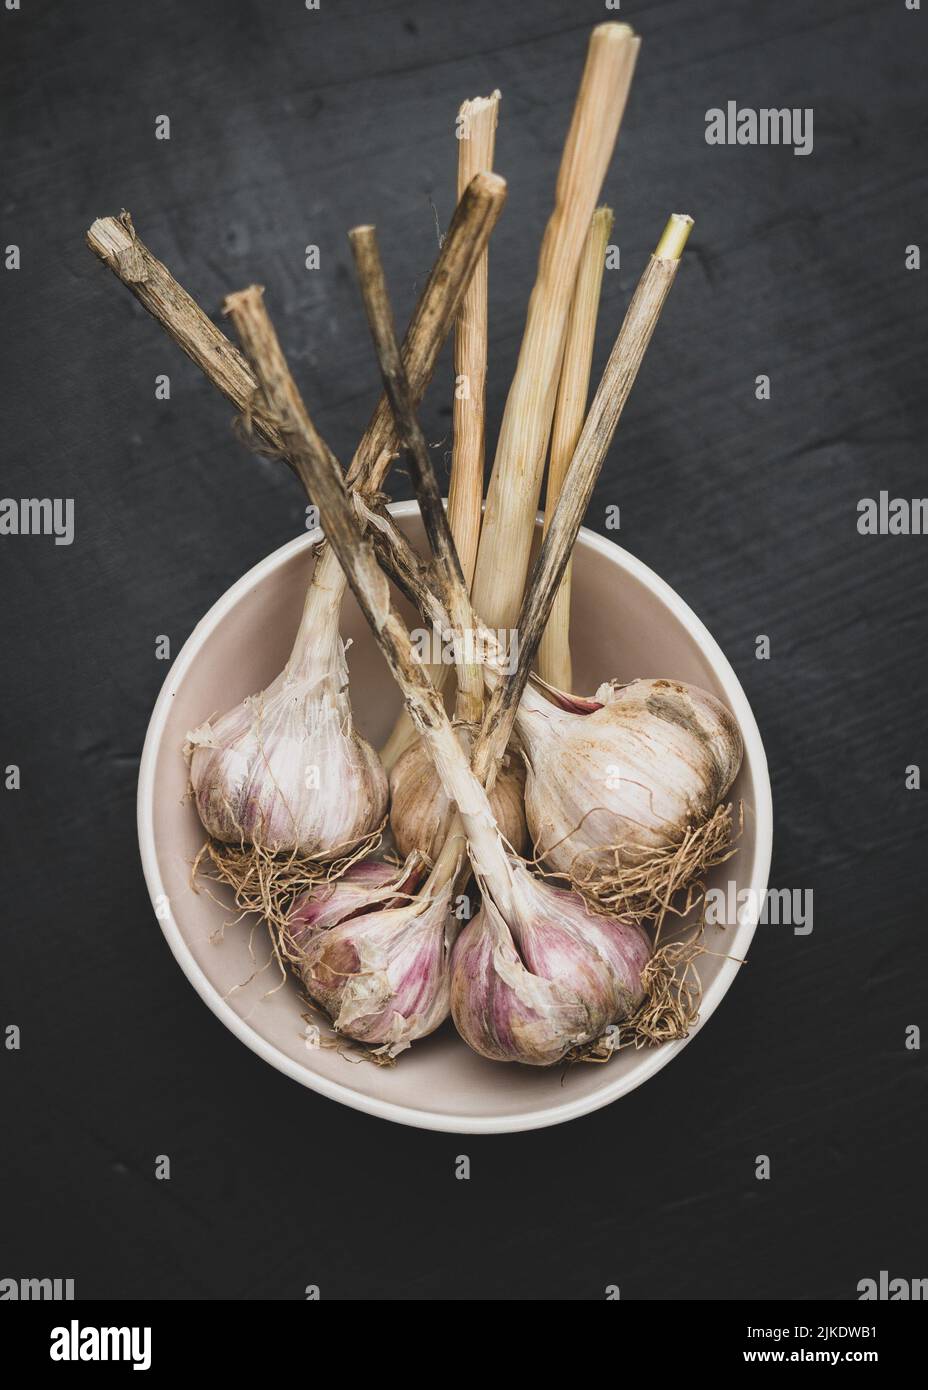 Bulbi d'aglio con gambi Foto Stock